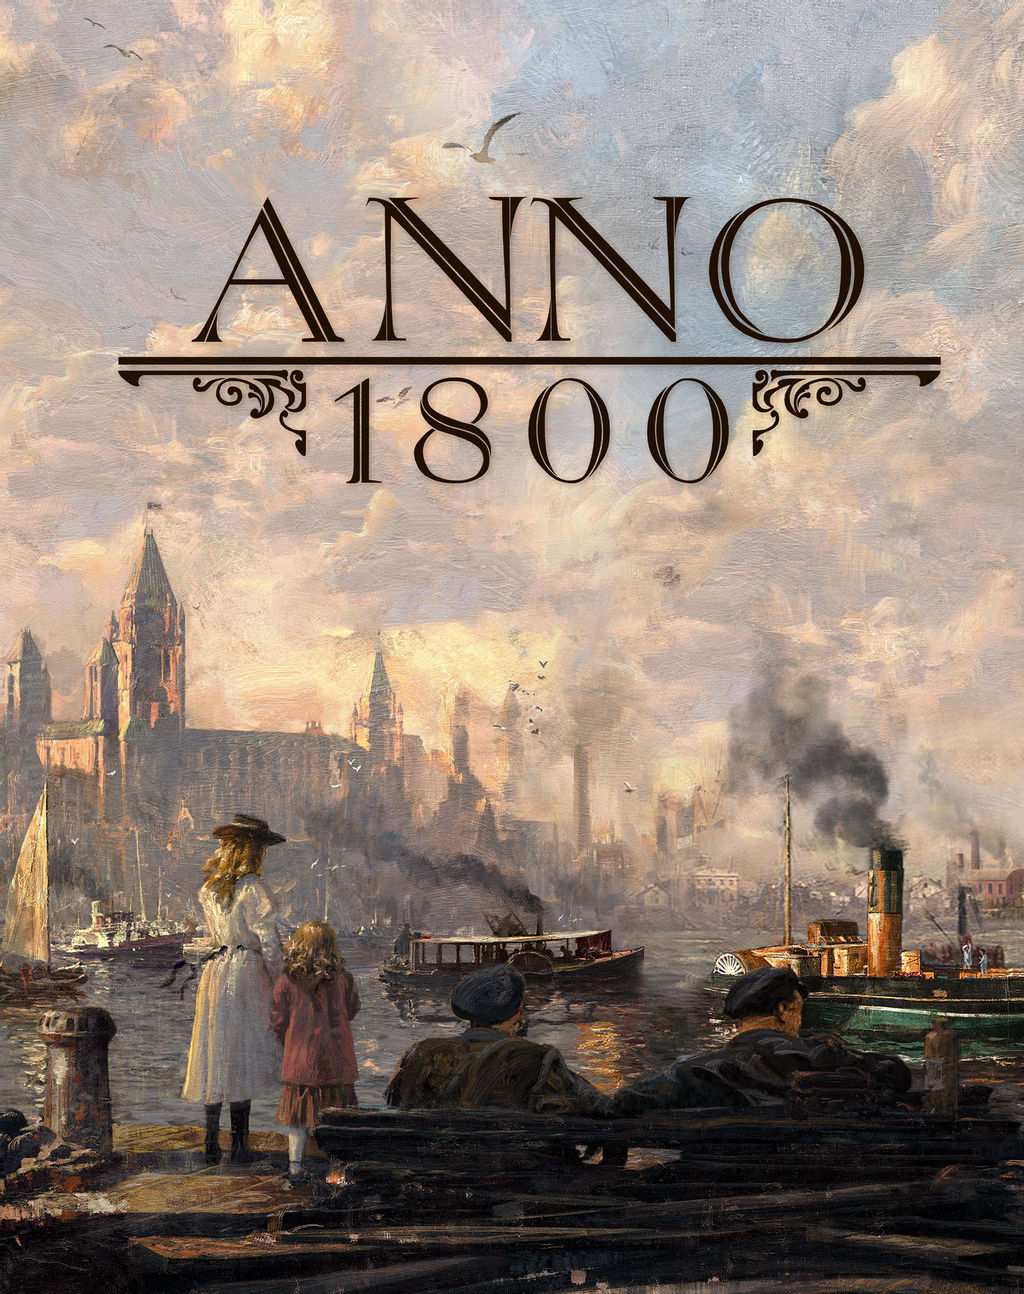 سی دی کی اریجینال یوپلی بازی Anno 1800